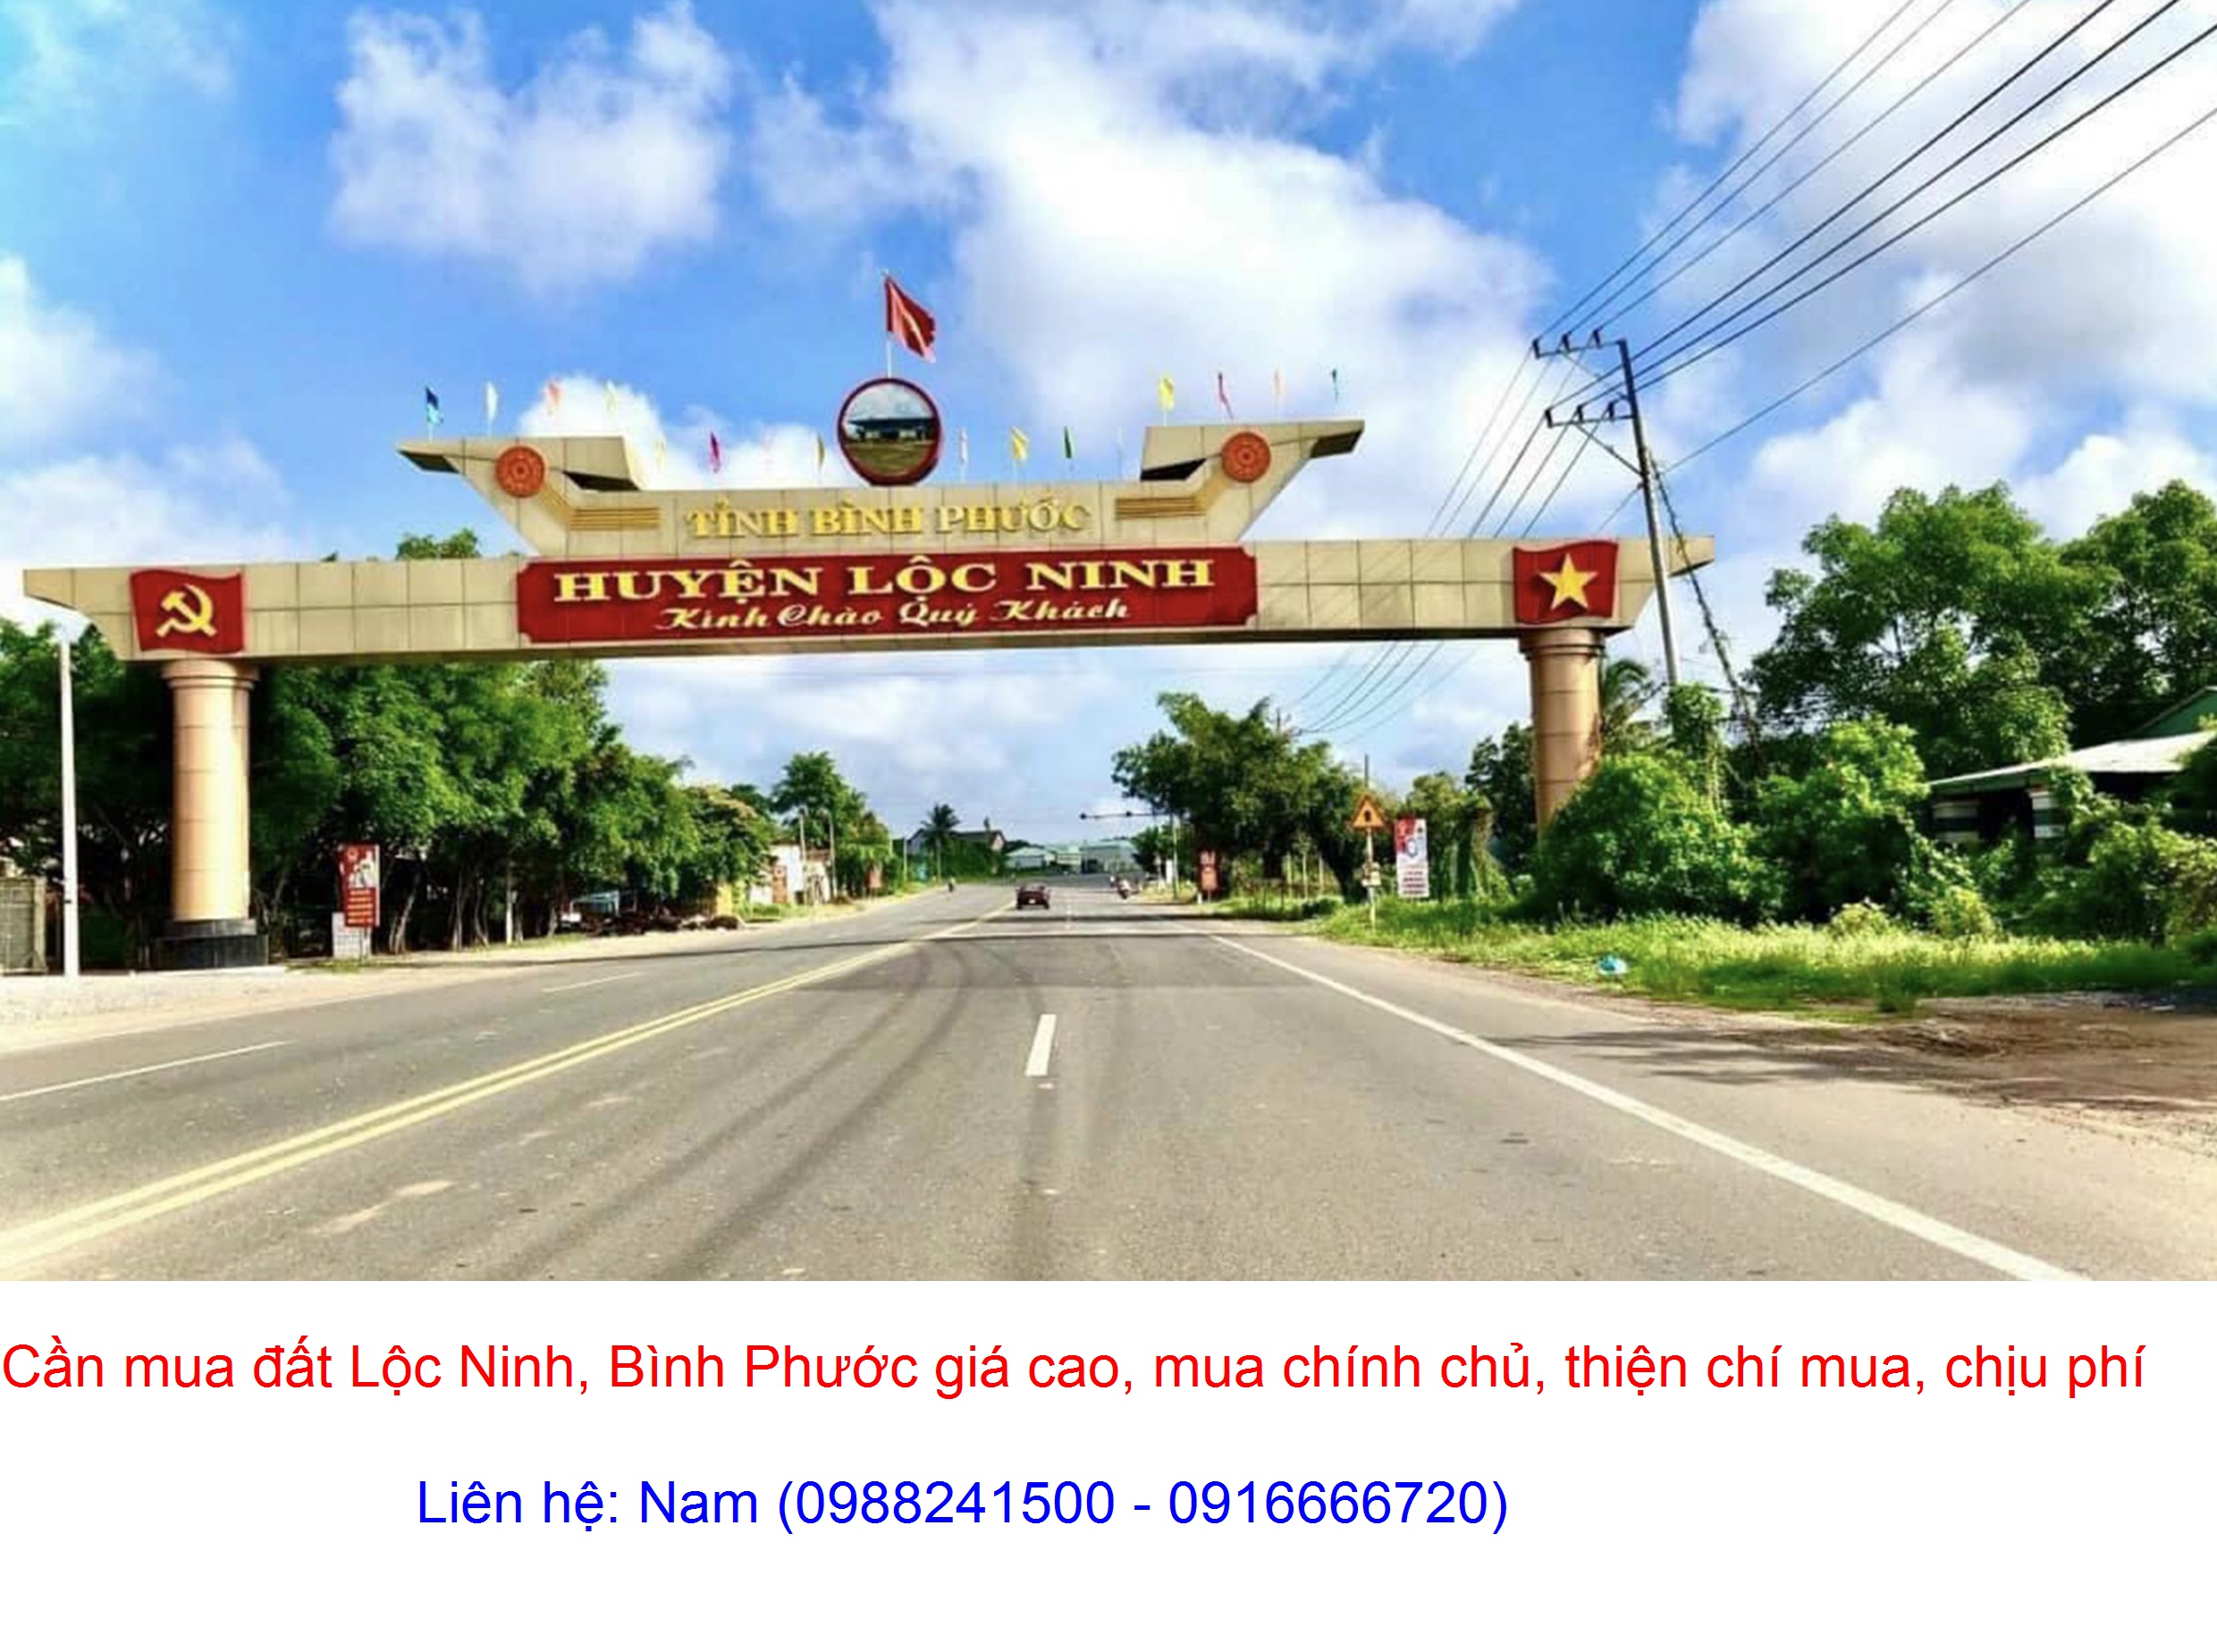 Cần Mua đất Lộc An, huyện Lộc Ninh giá cao, mua chính chủ, thiện chí mua, chịu phí sang tên